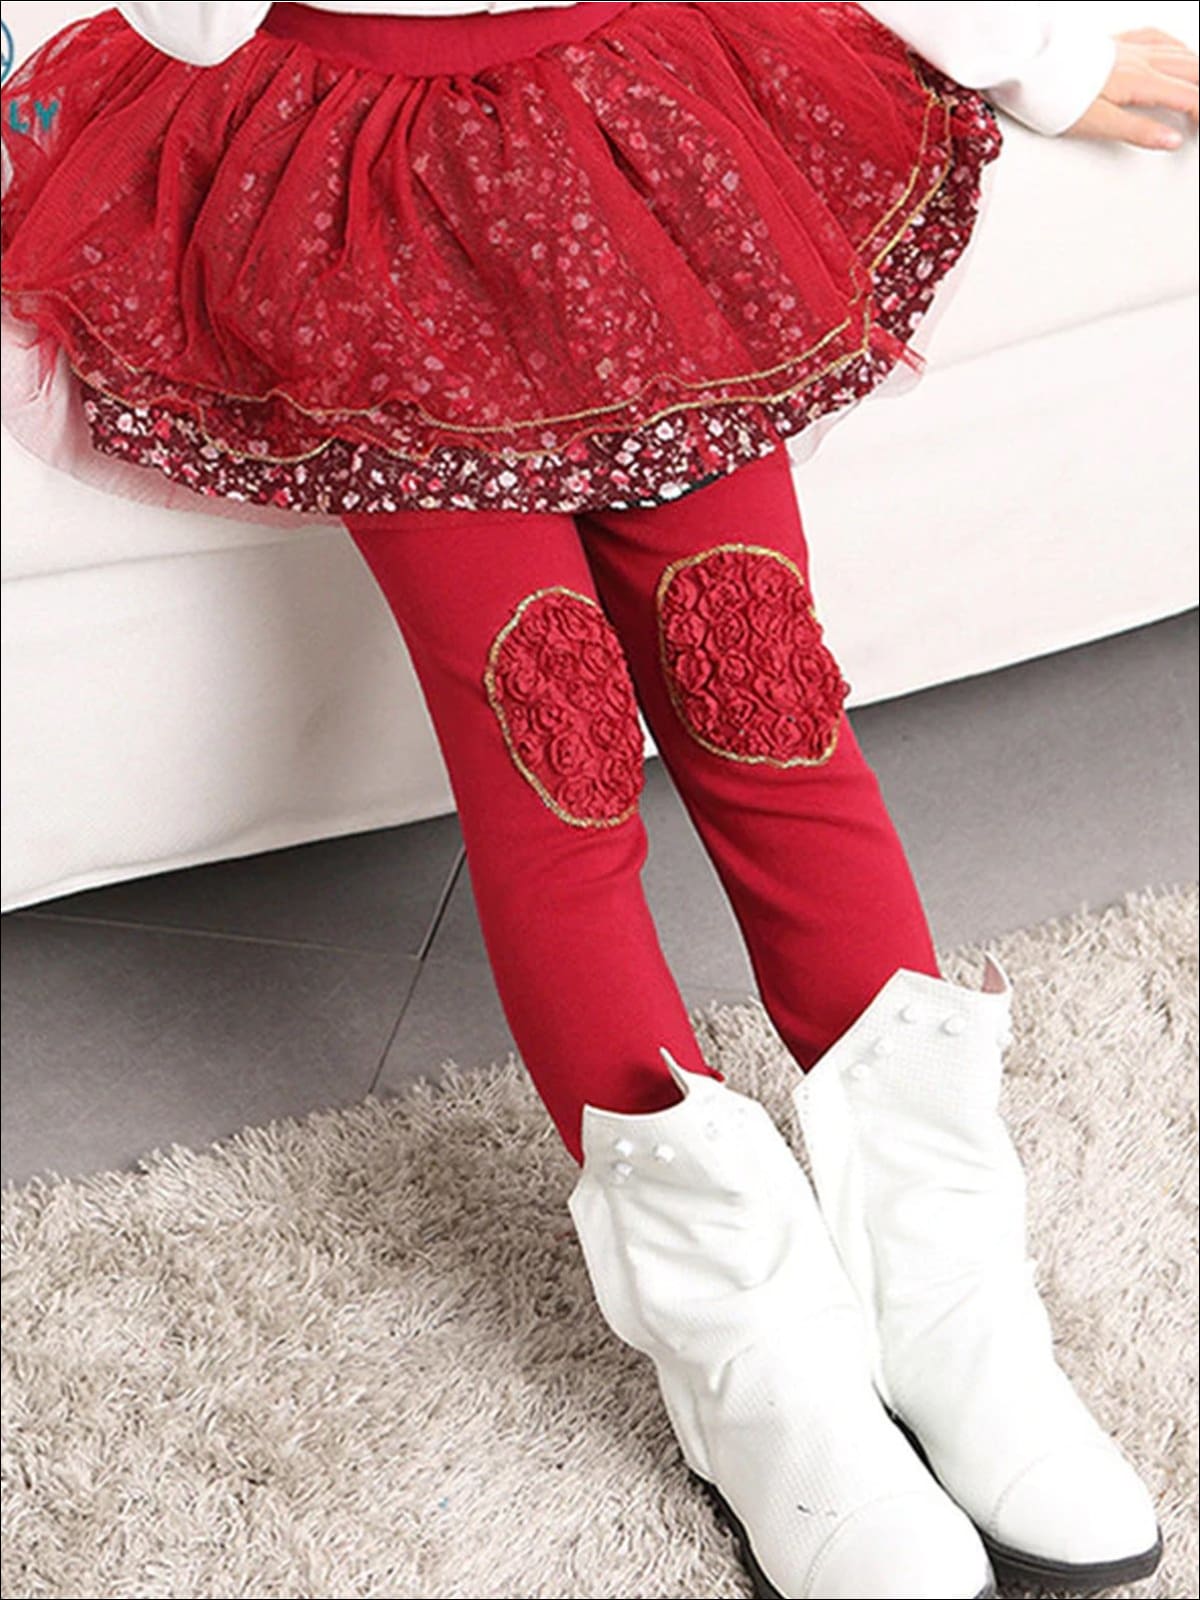 Girls Floral Tutu Skirt Leggings - Red / 24M - Girls Leggings